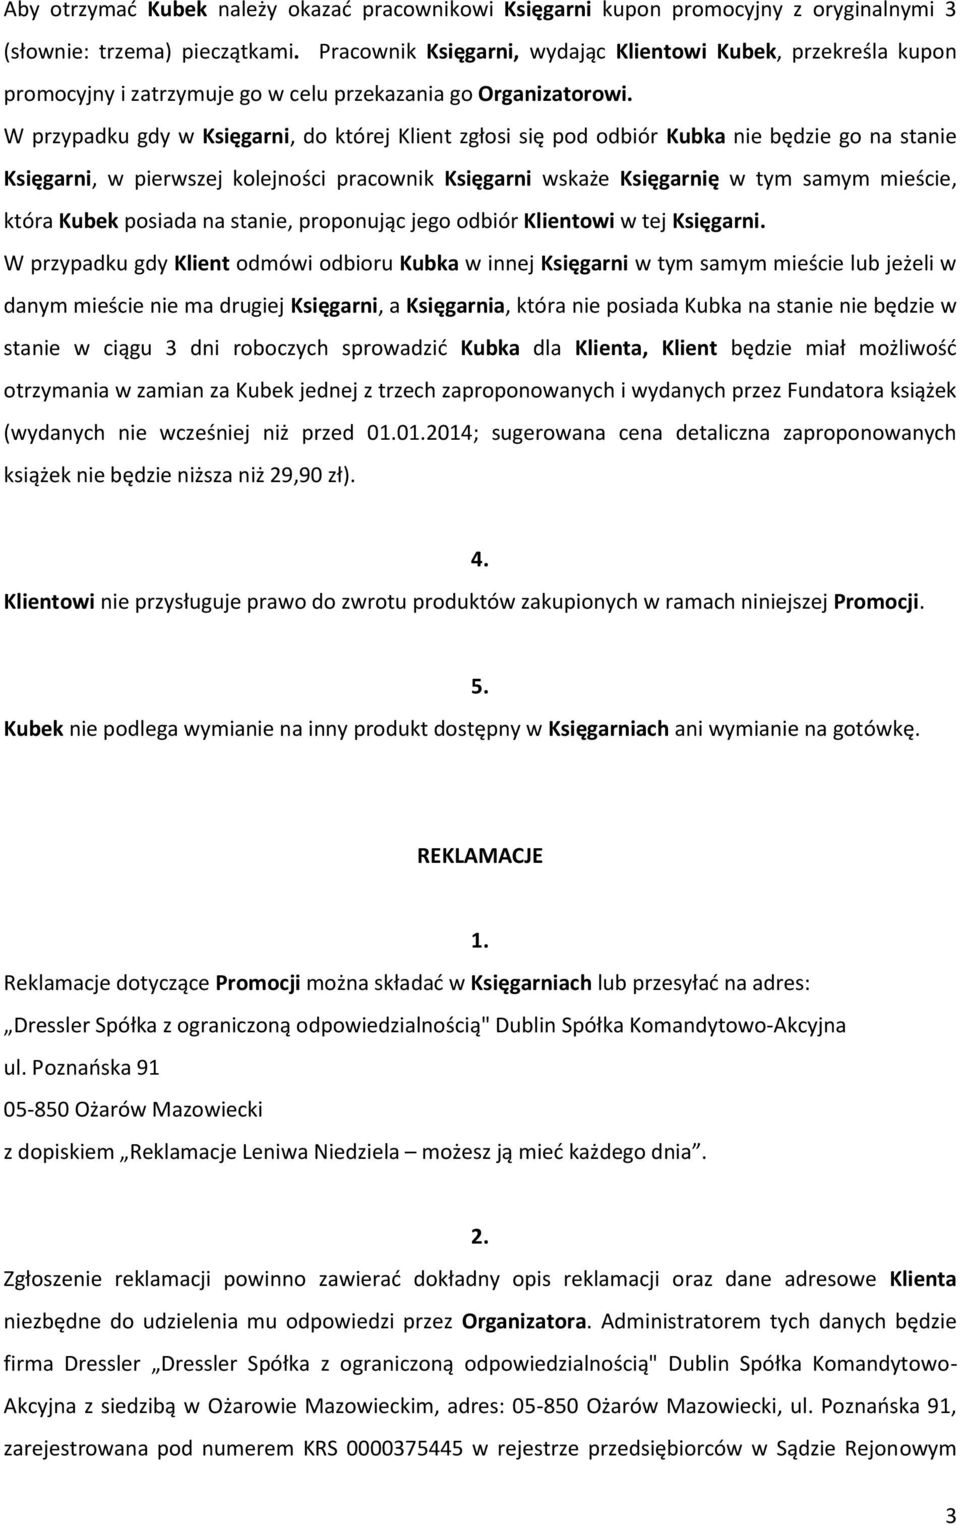 W przypadku gdy w Księgarni, do której Klient zgłosi się pod odbiór Kubka nie będzie go na stanie Księgarni, w pierwszej kolejności pracownik Księgarni wskaże Księgarnię w tym samym mieście, która